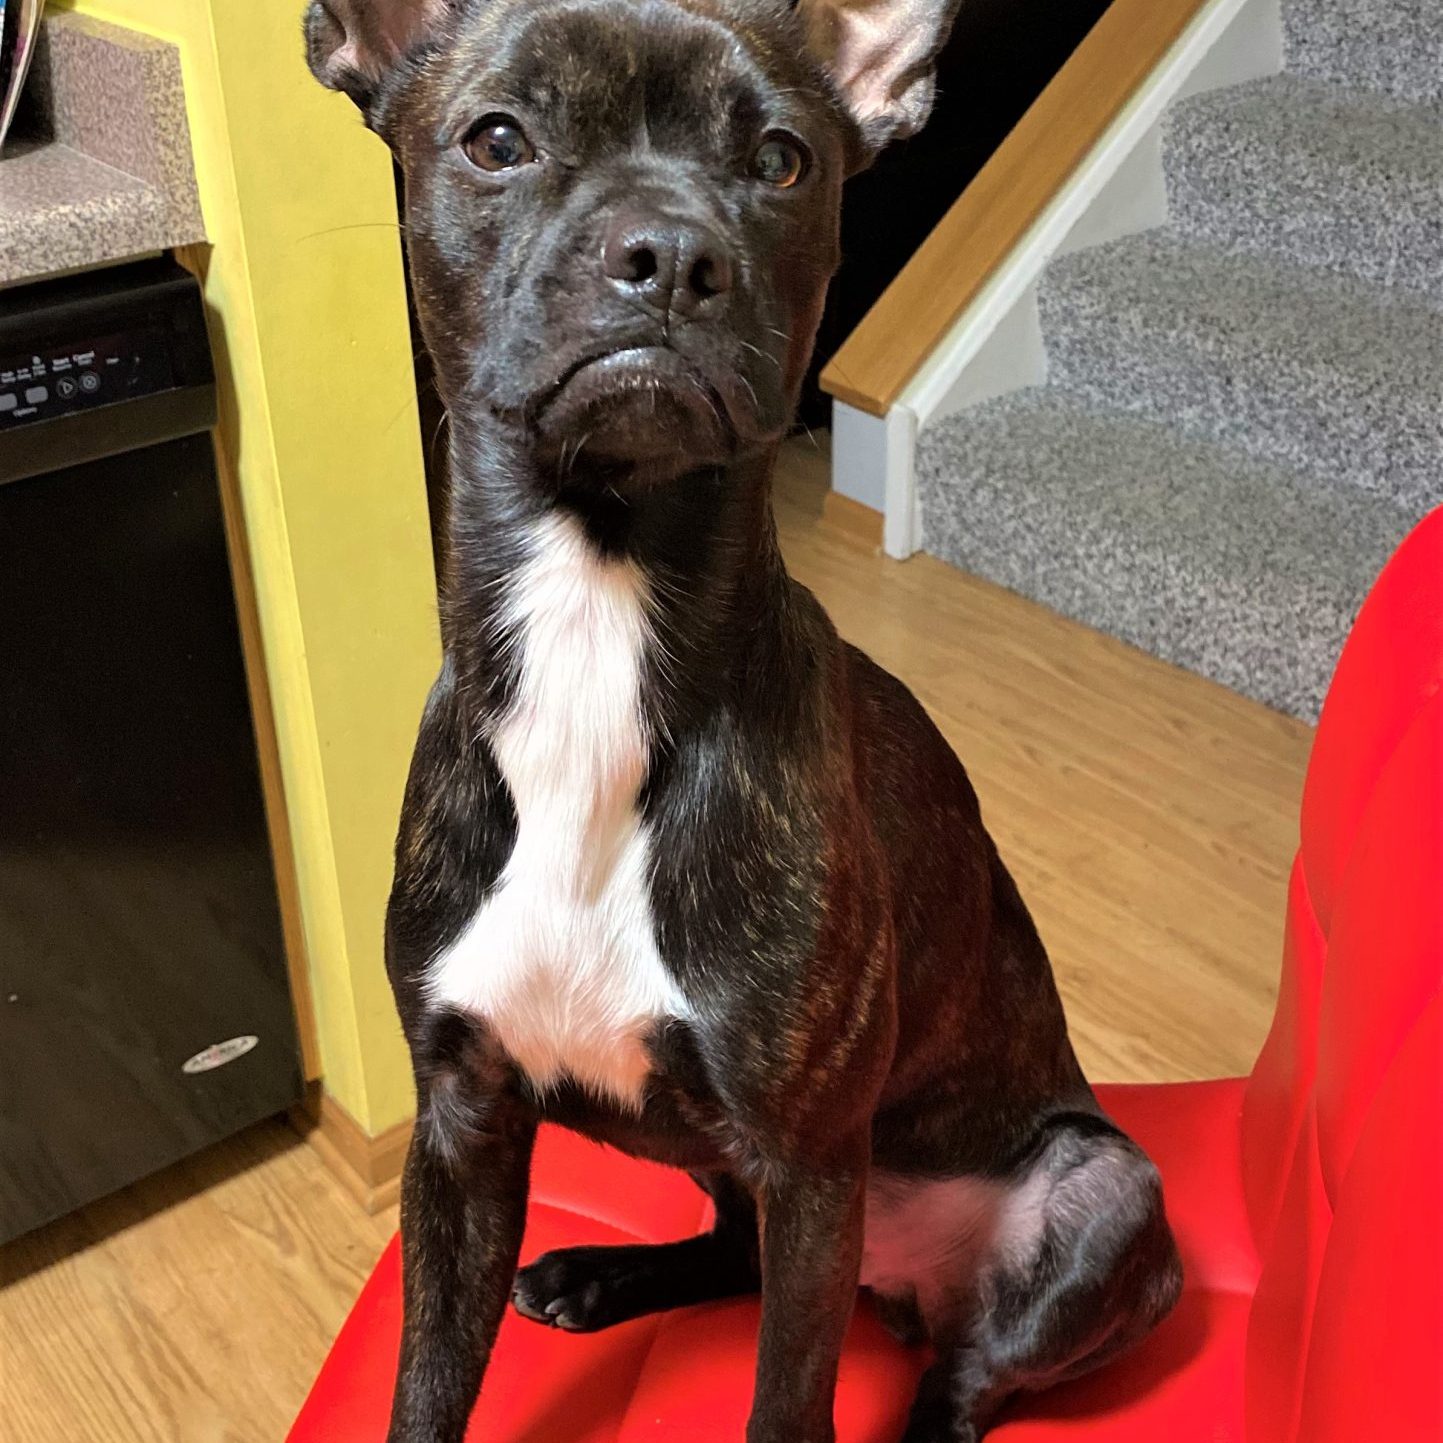 cute dog photo contest winner batman chihuahua boston terrier mix august 2021